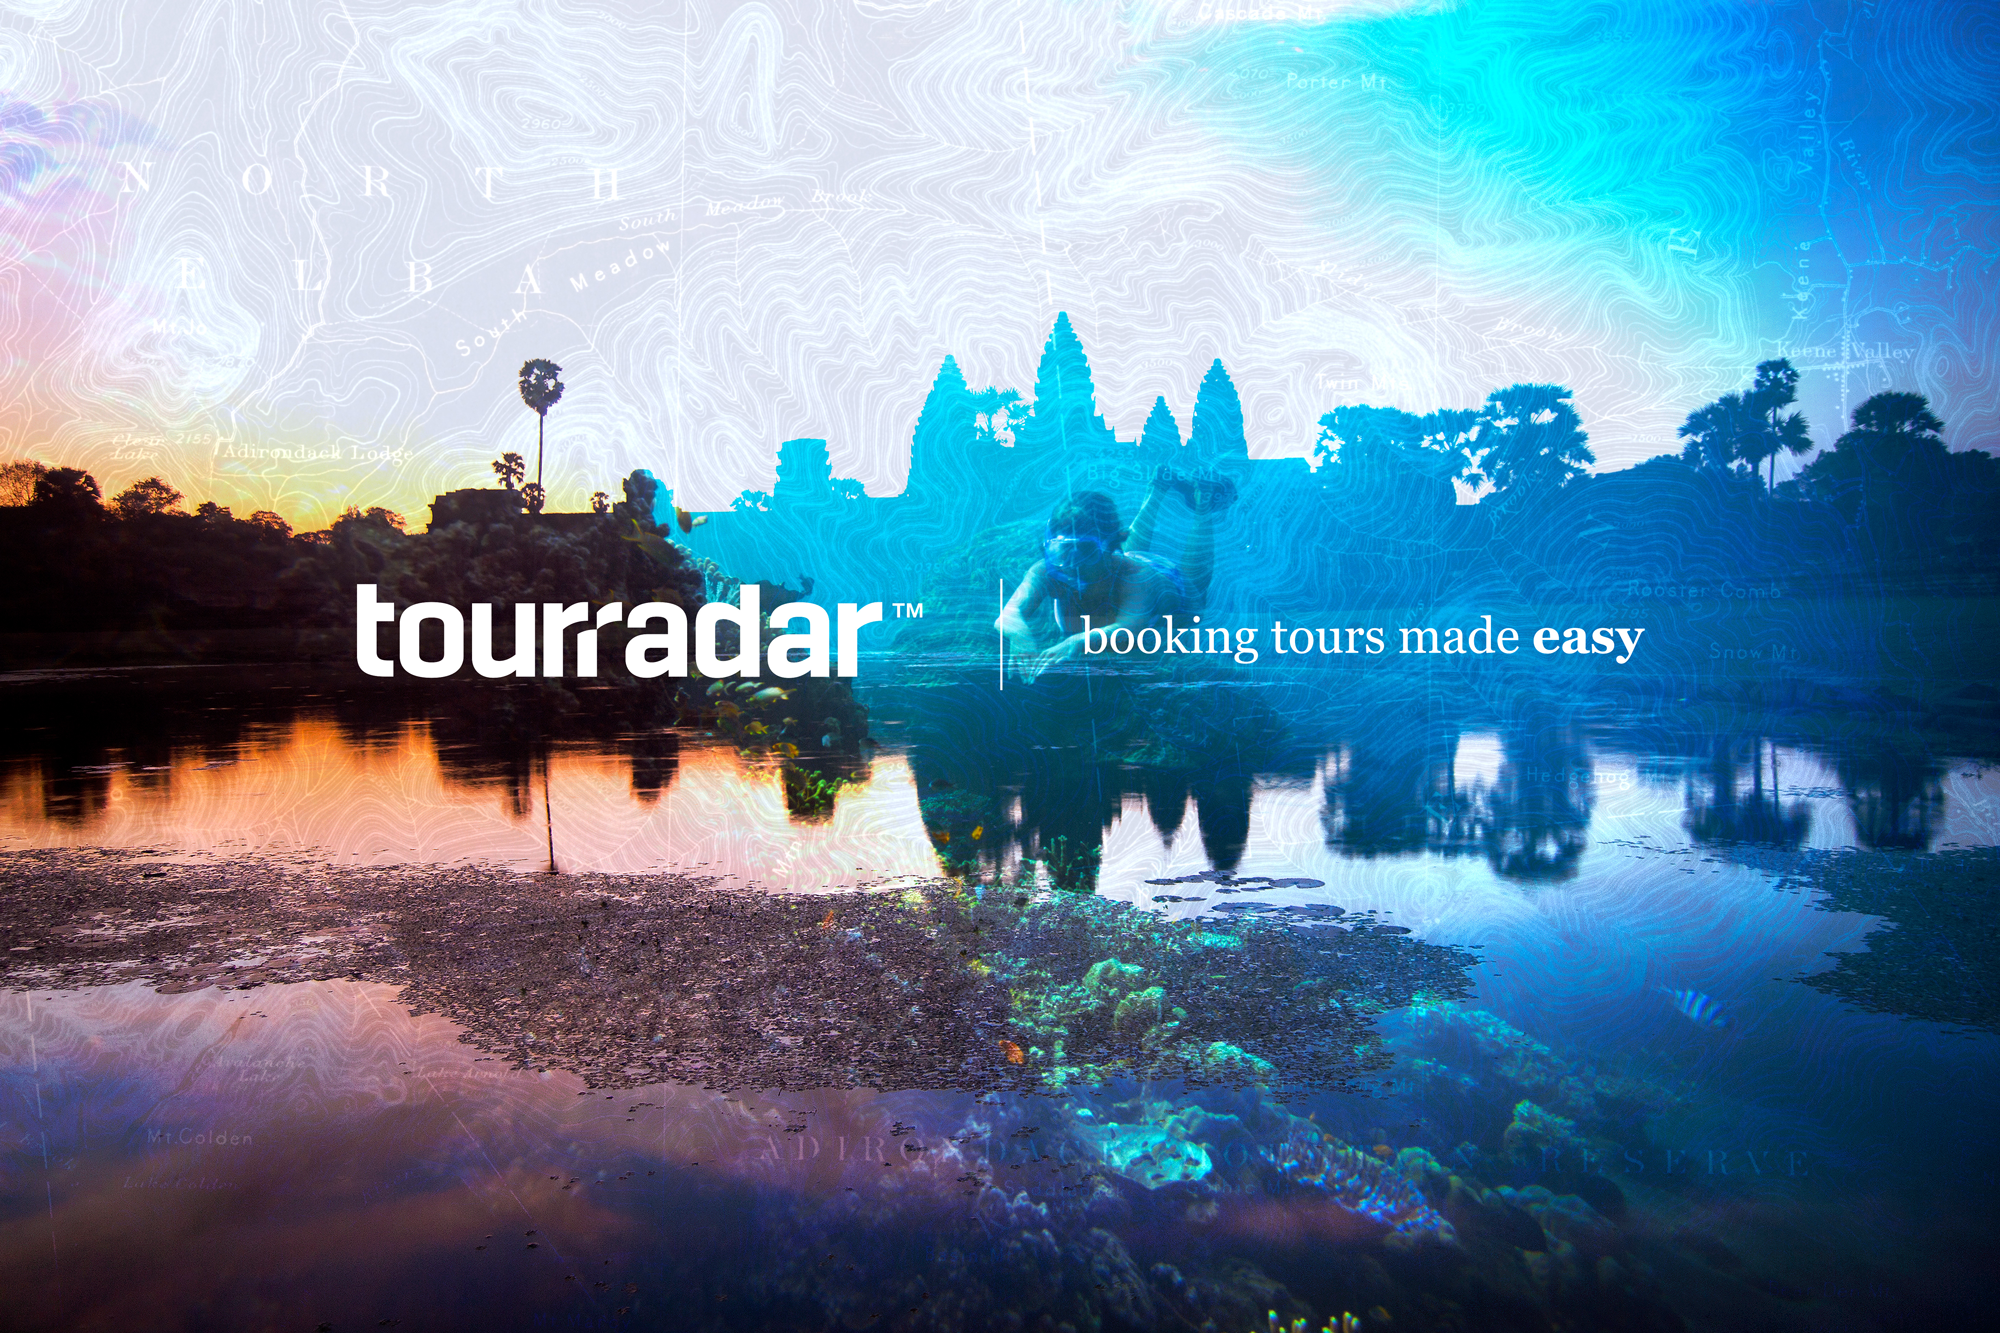 tourradar travel agency